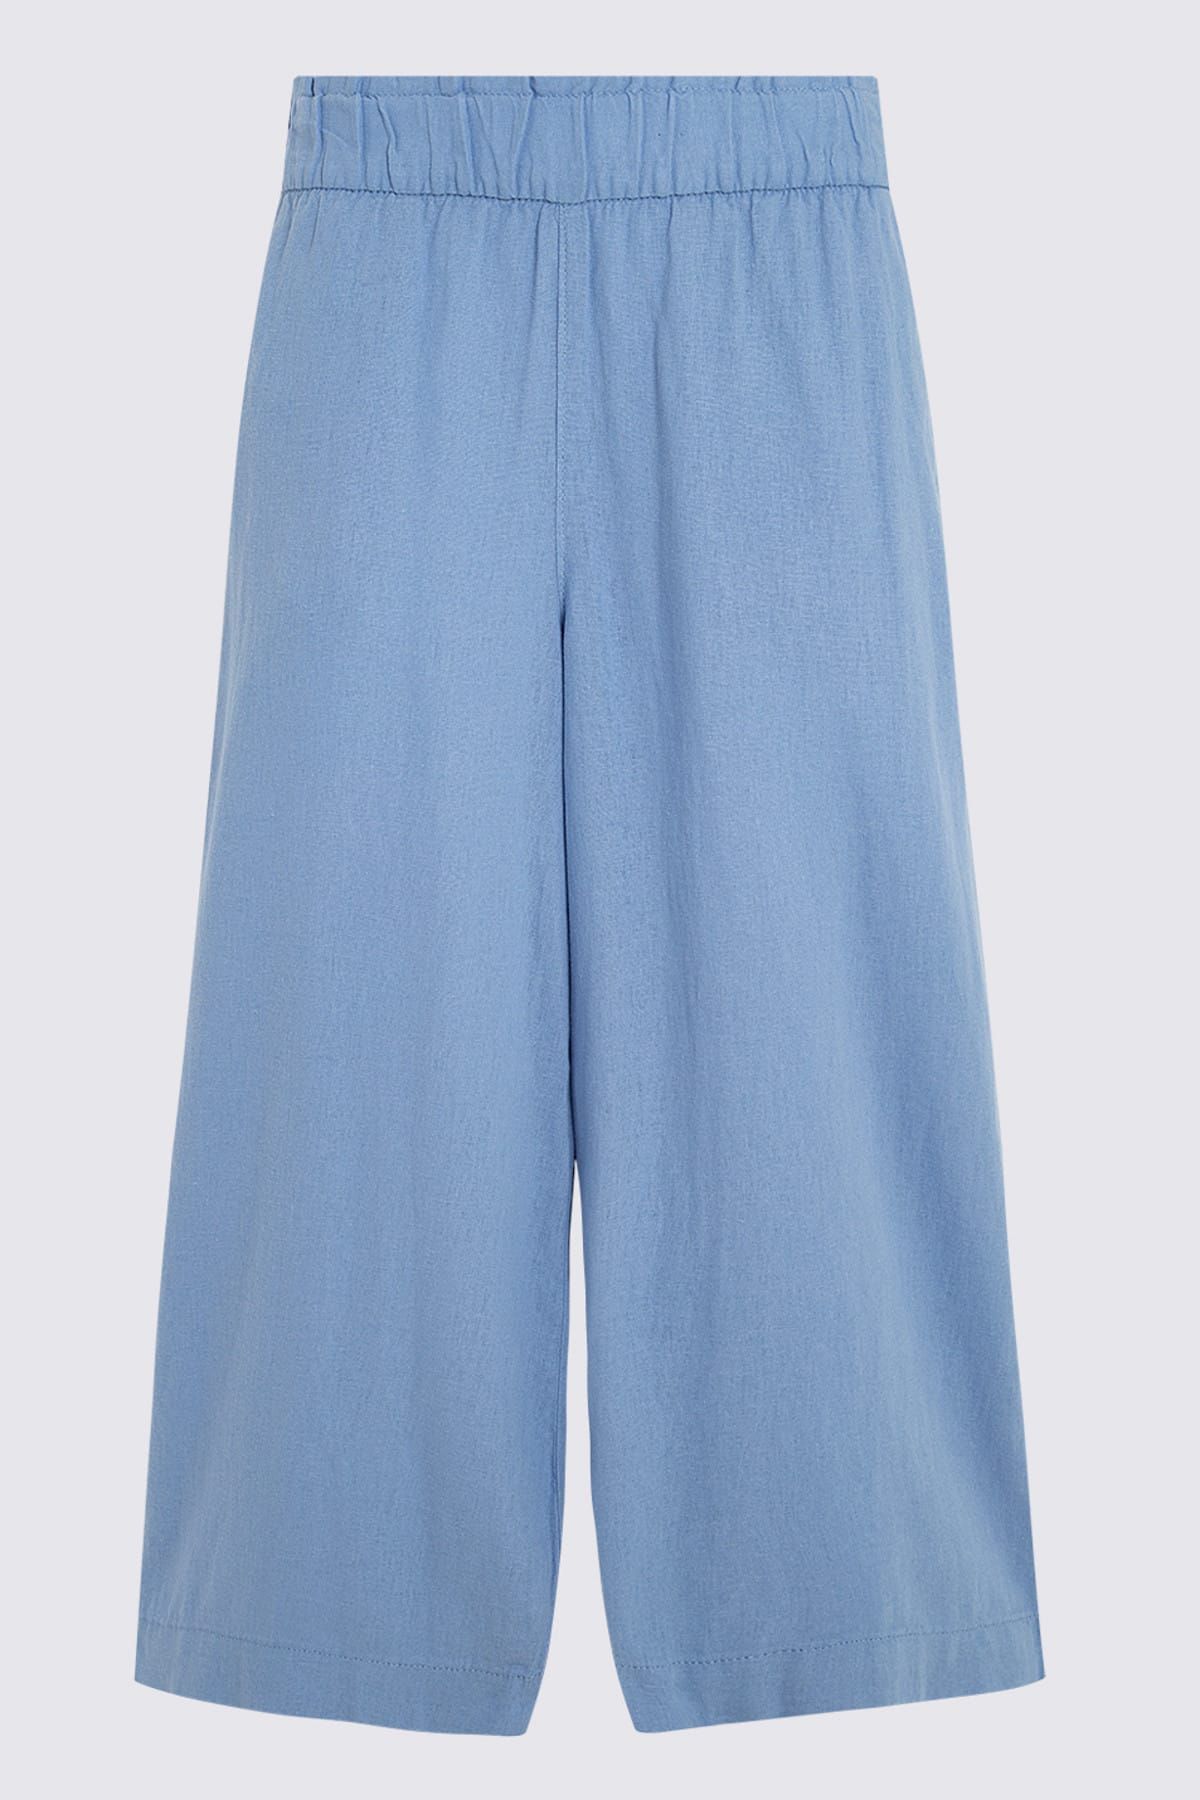 Marks & Spencer Kadın Mavi Wide Leg Kısa Pantolon T57007081X